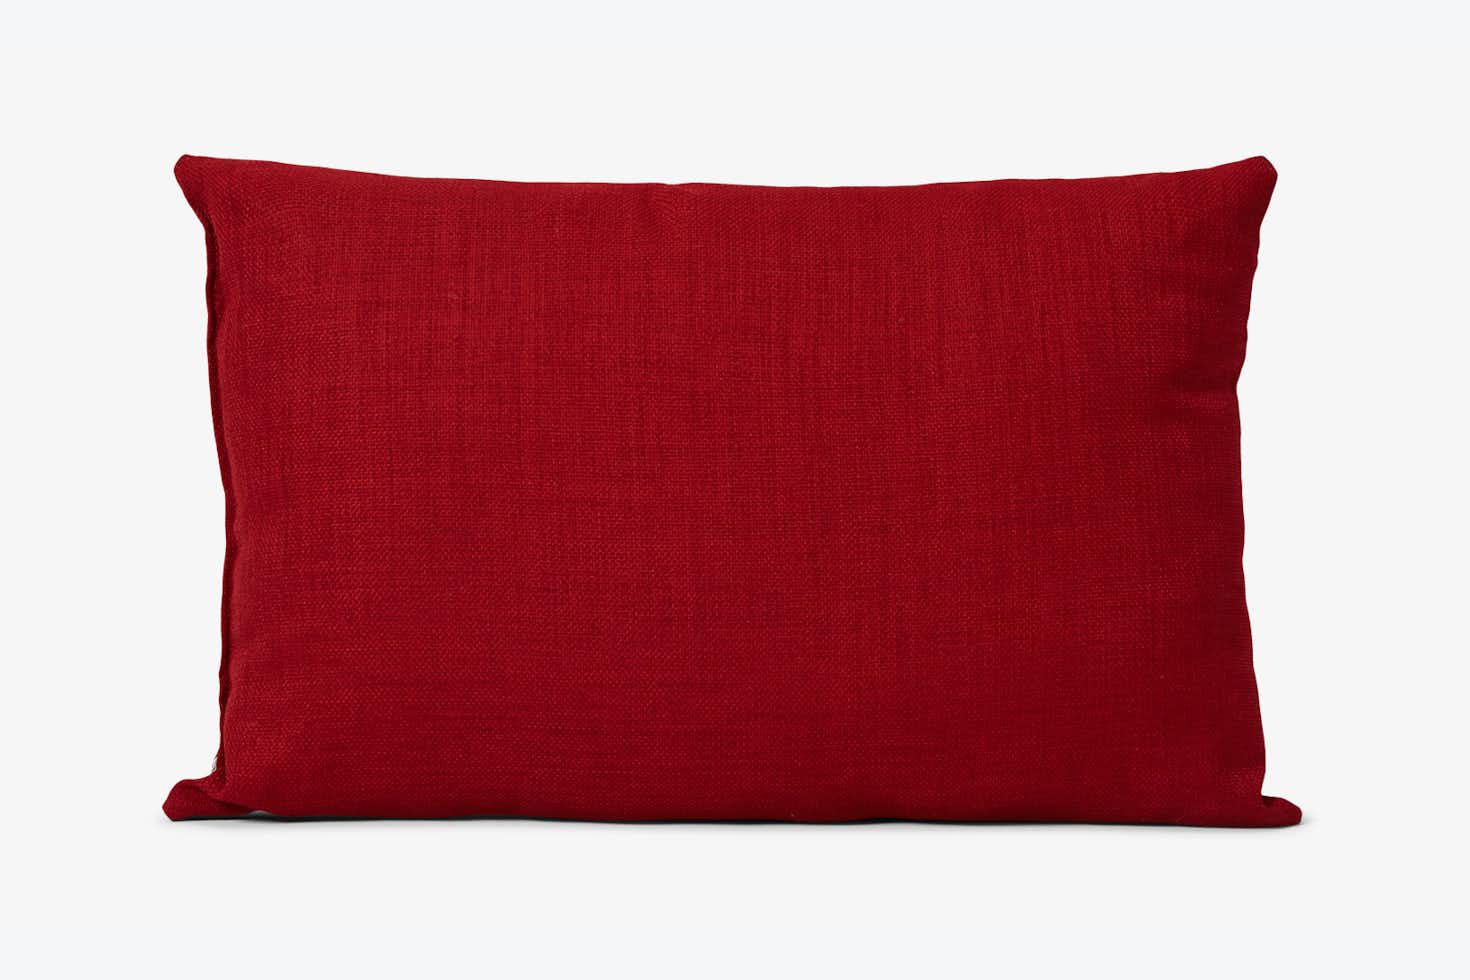 Mia Red Pillow